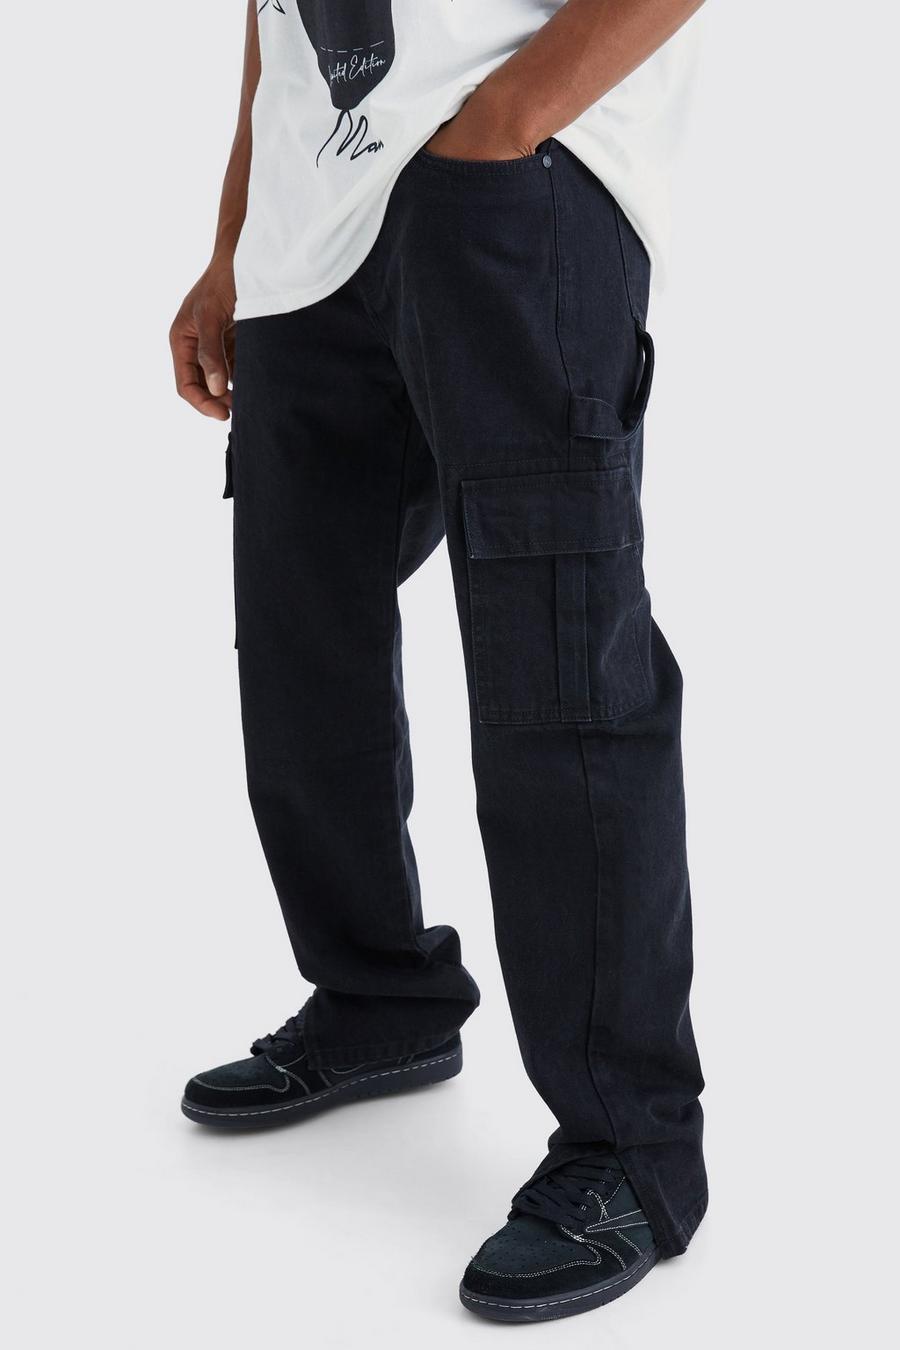 Jeans rilassati in denim rigido stile Carpenter con spacco sul fondo, True black